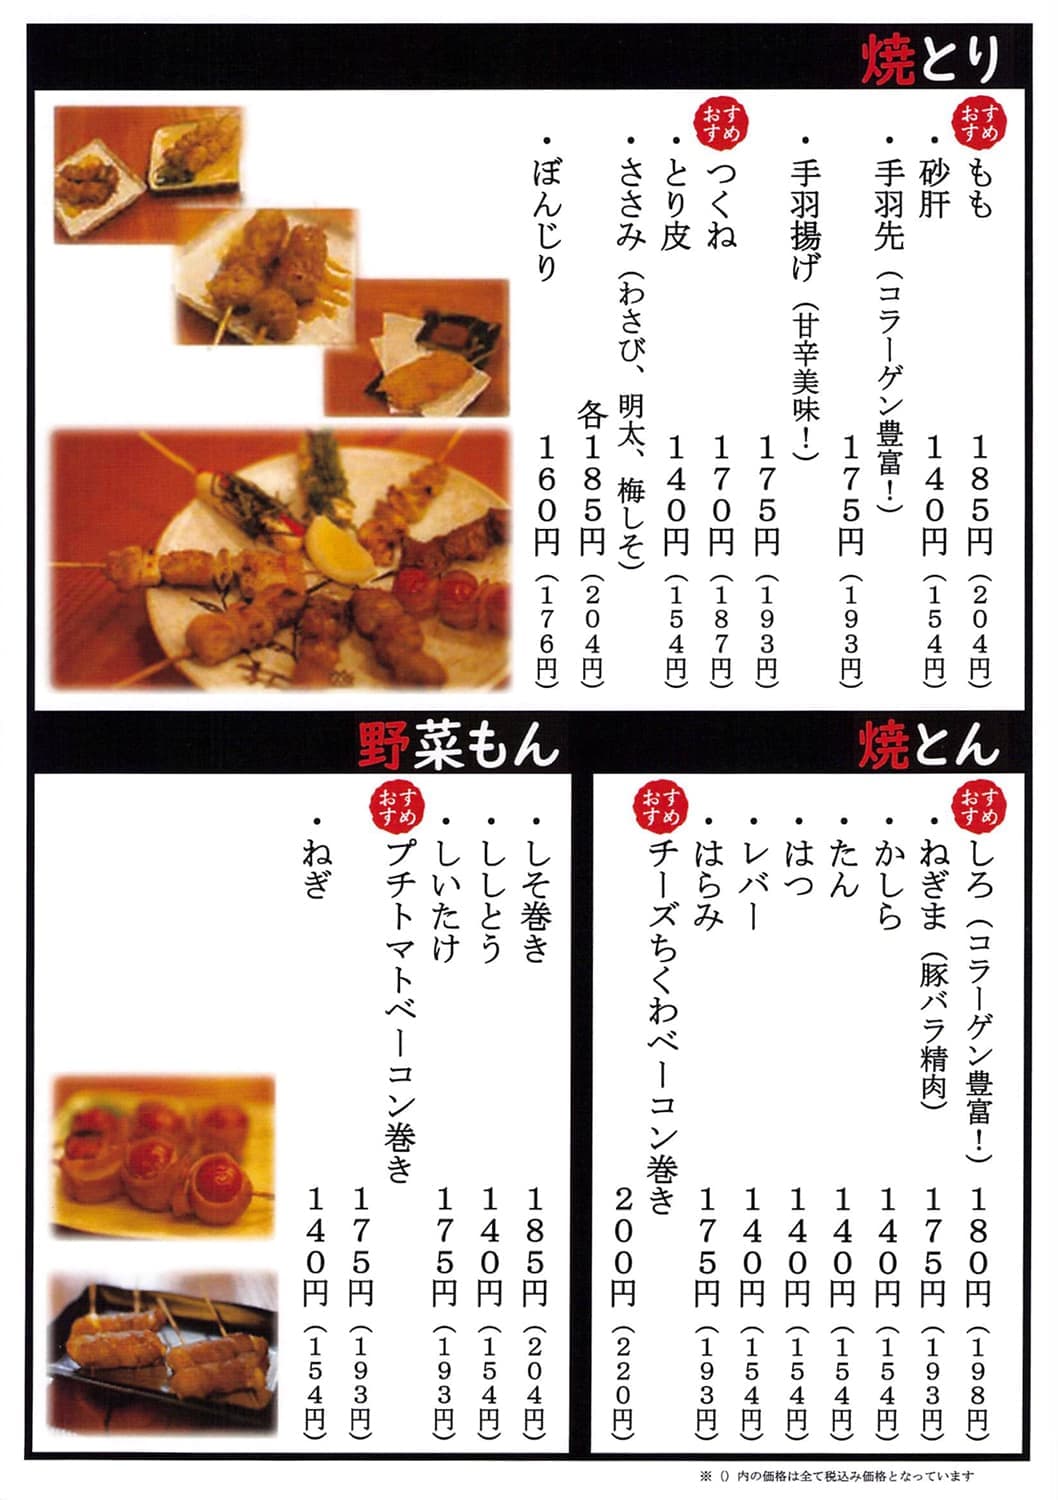 てっちゃんの串焼きメニュー｜焼とりてっちゃん｜中華食堂 てっちゃんは、静岡県三島市の三島駅前と裾野市にあるテイクアウトもできる居酒屋｜焼きとり、串焼き屋、中華料理屋です。